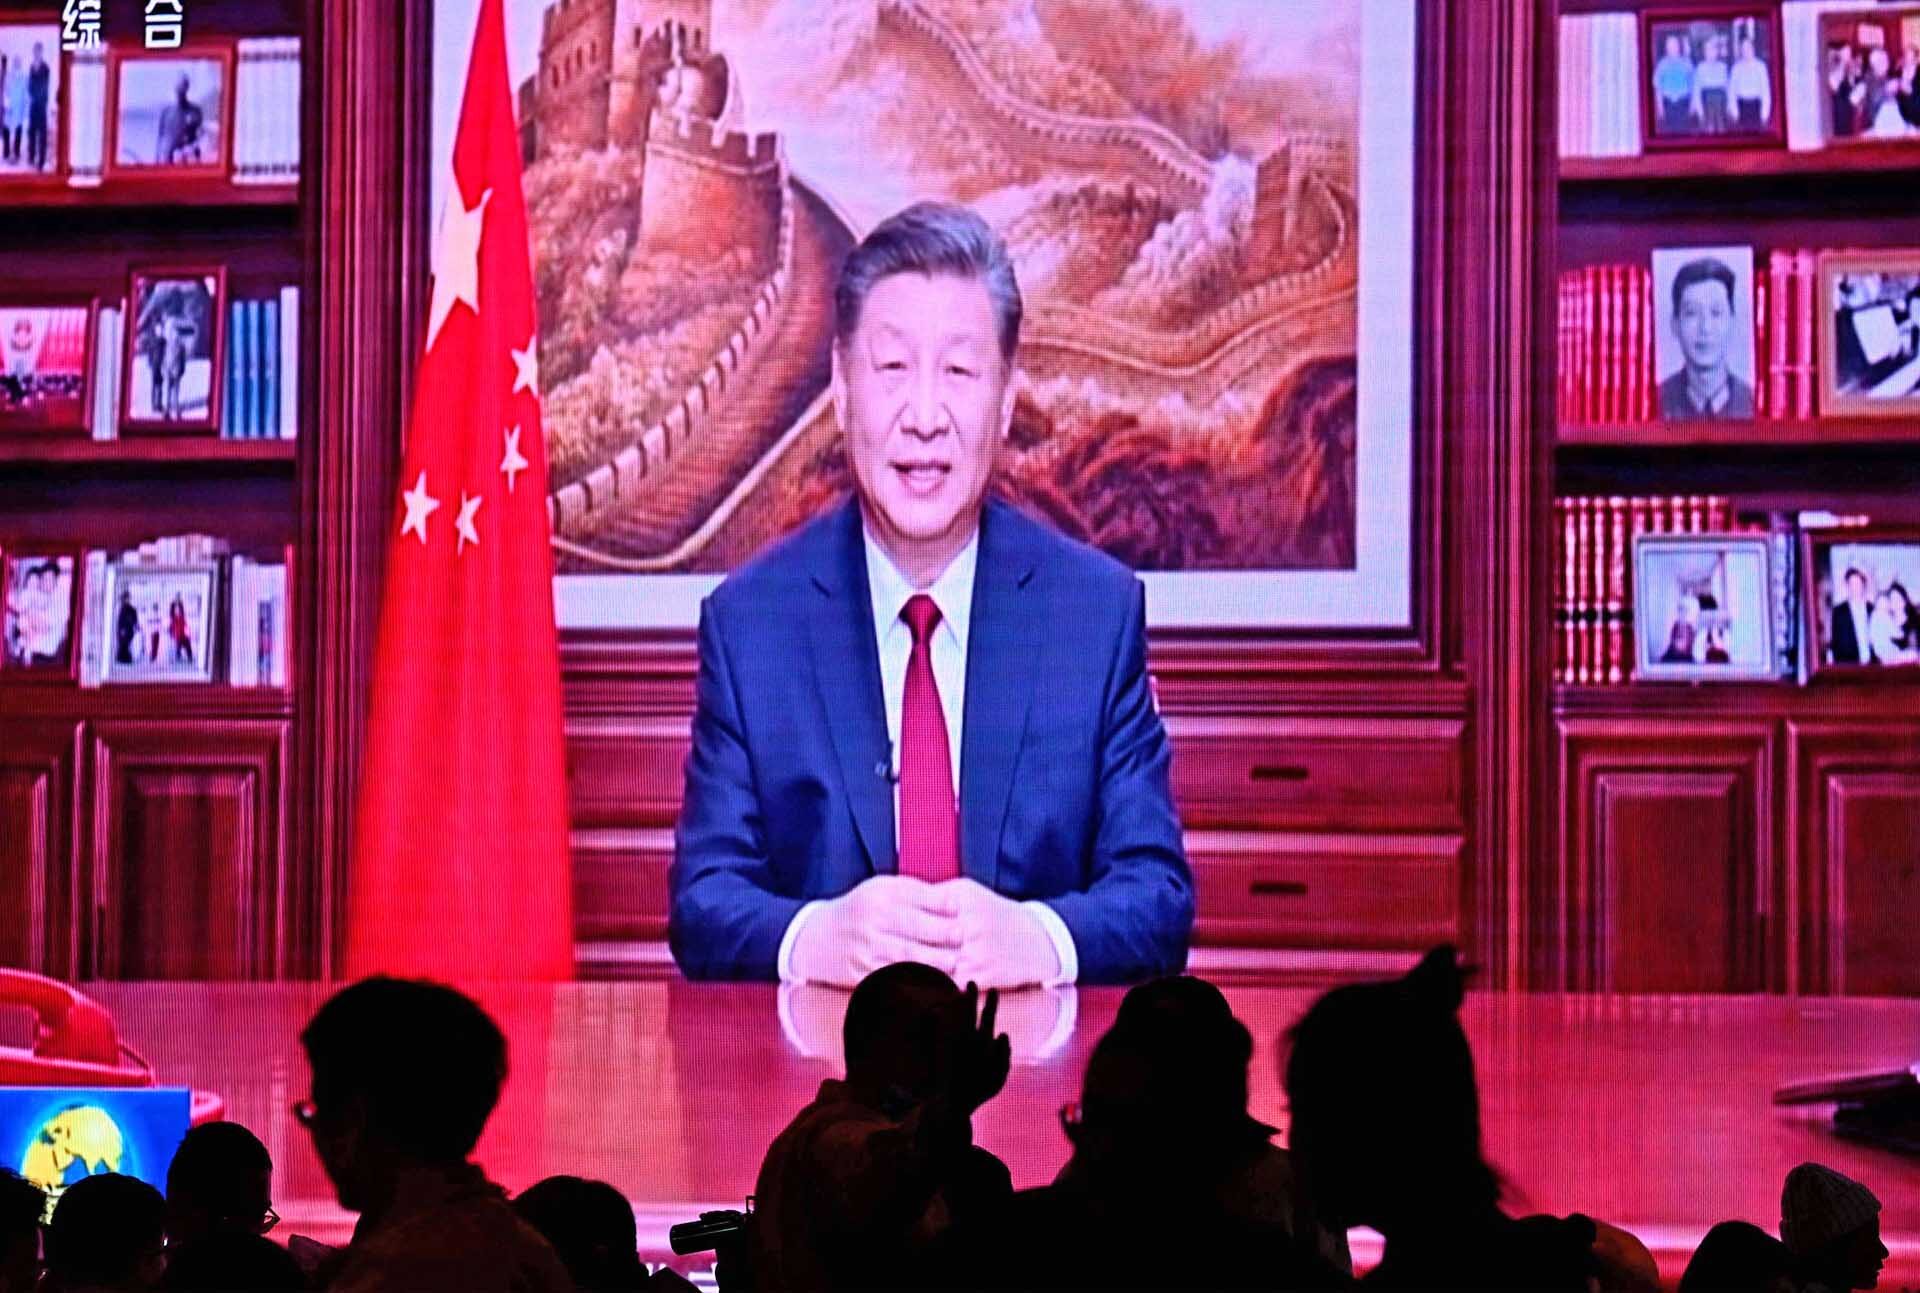 สี จิ้นผิง ย้ำอีกลุยแผน “รวมชาติ” ผู้นำไต้หวันเตือนจีนหวัง “แทรกแซง” การเลือกตั้ง